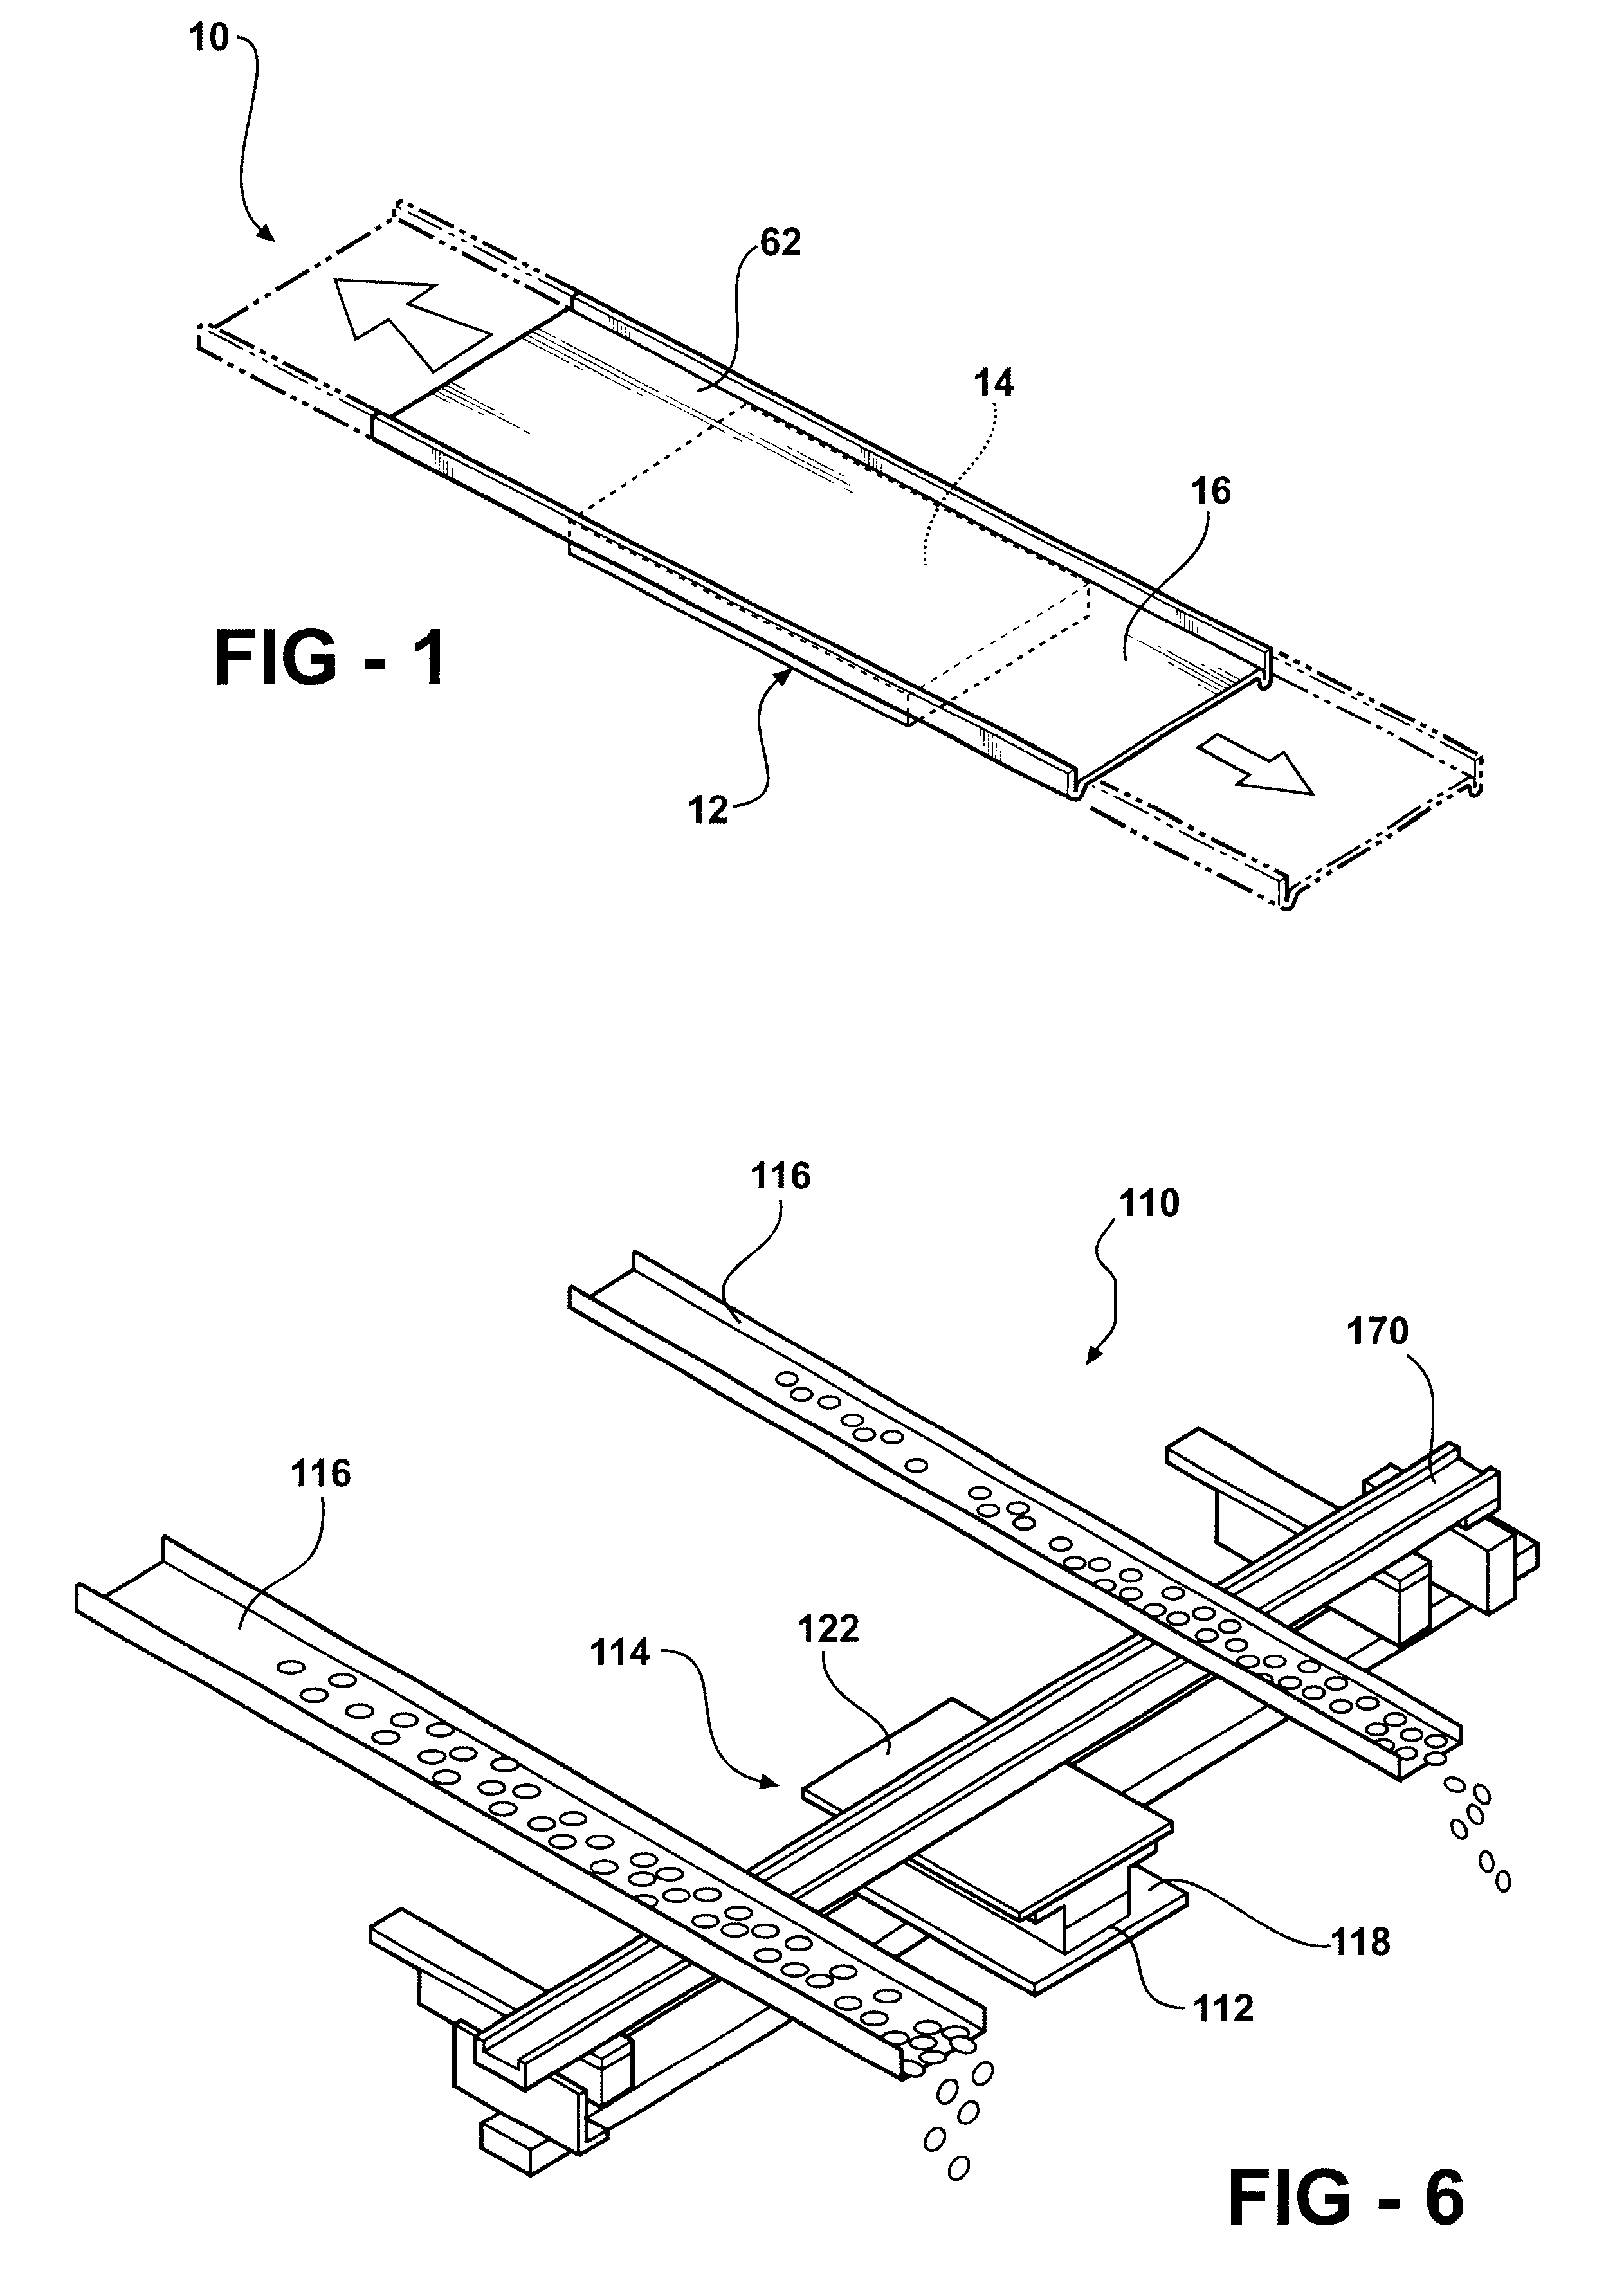 Pneumatically actuated beltless conveyor